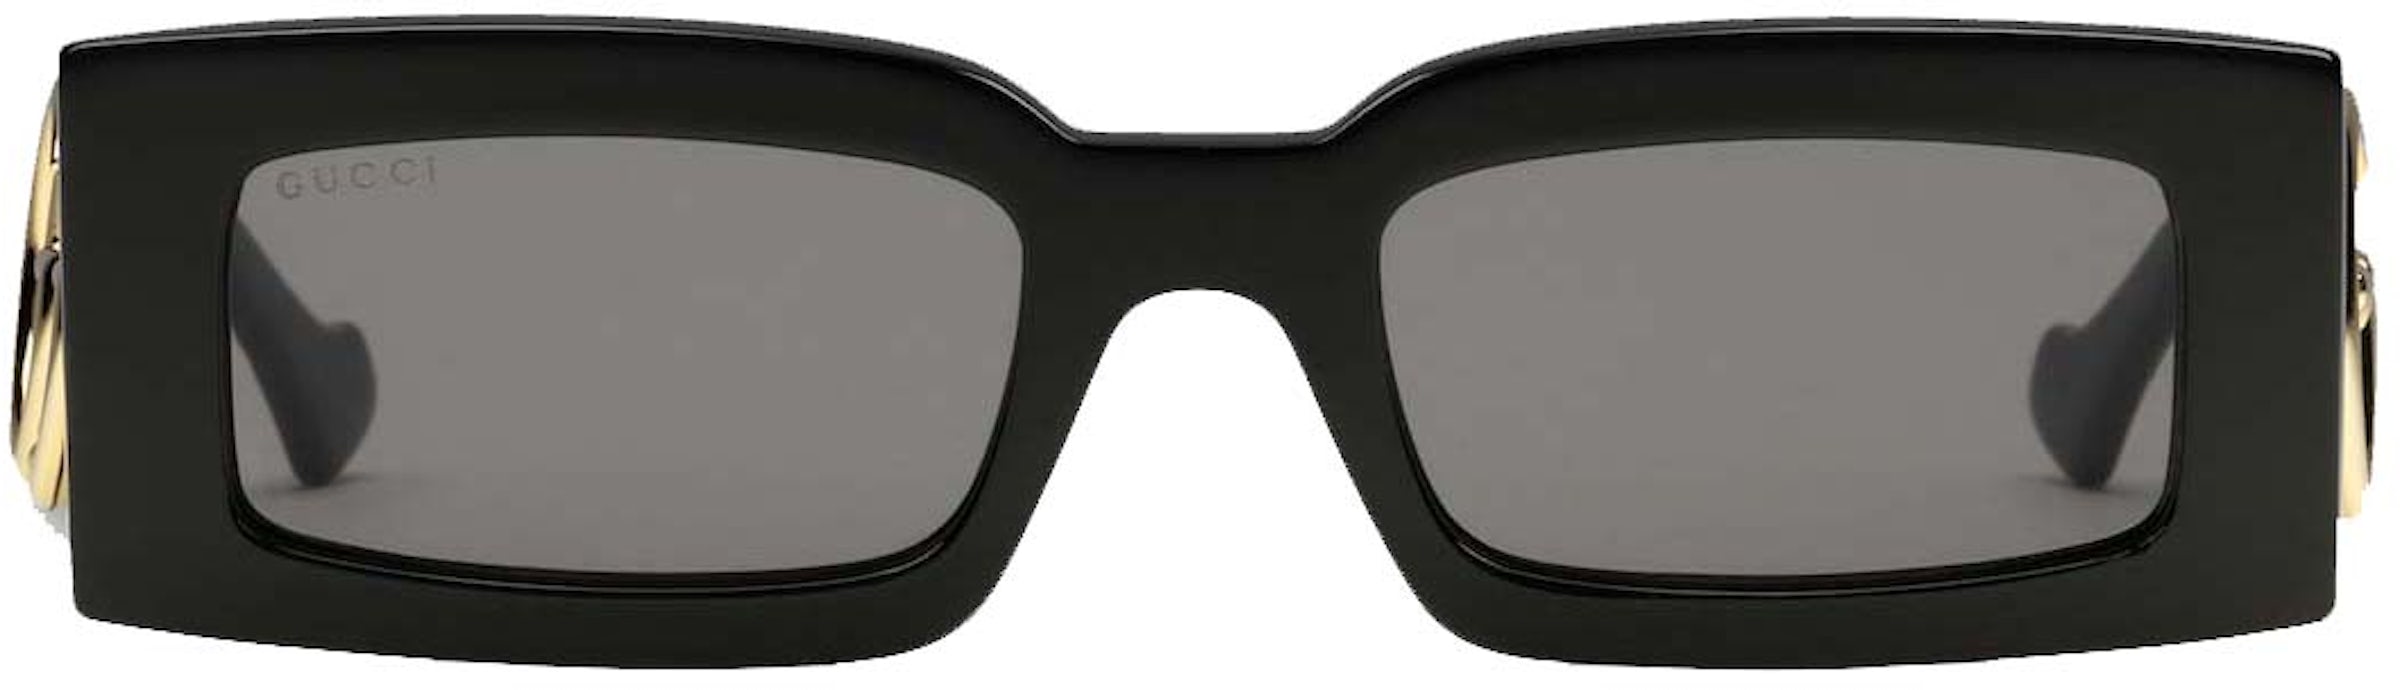 Rectangular-frame sunglasses